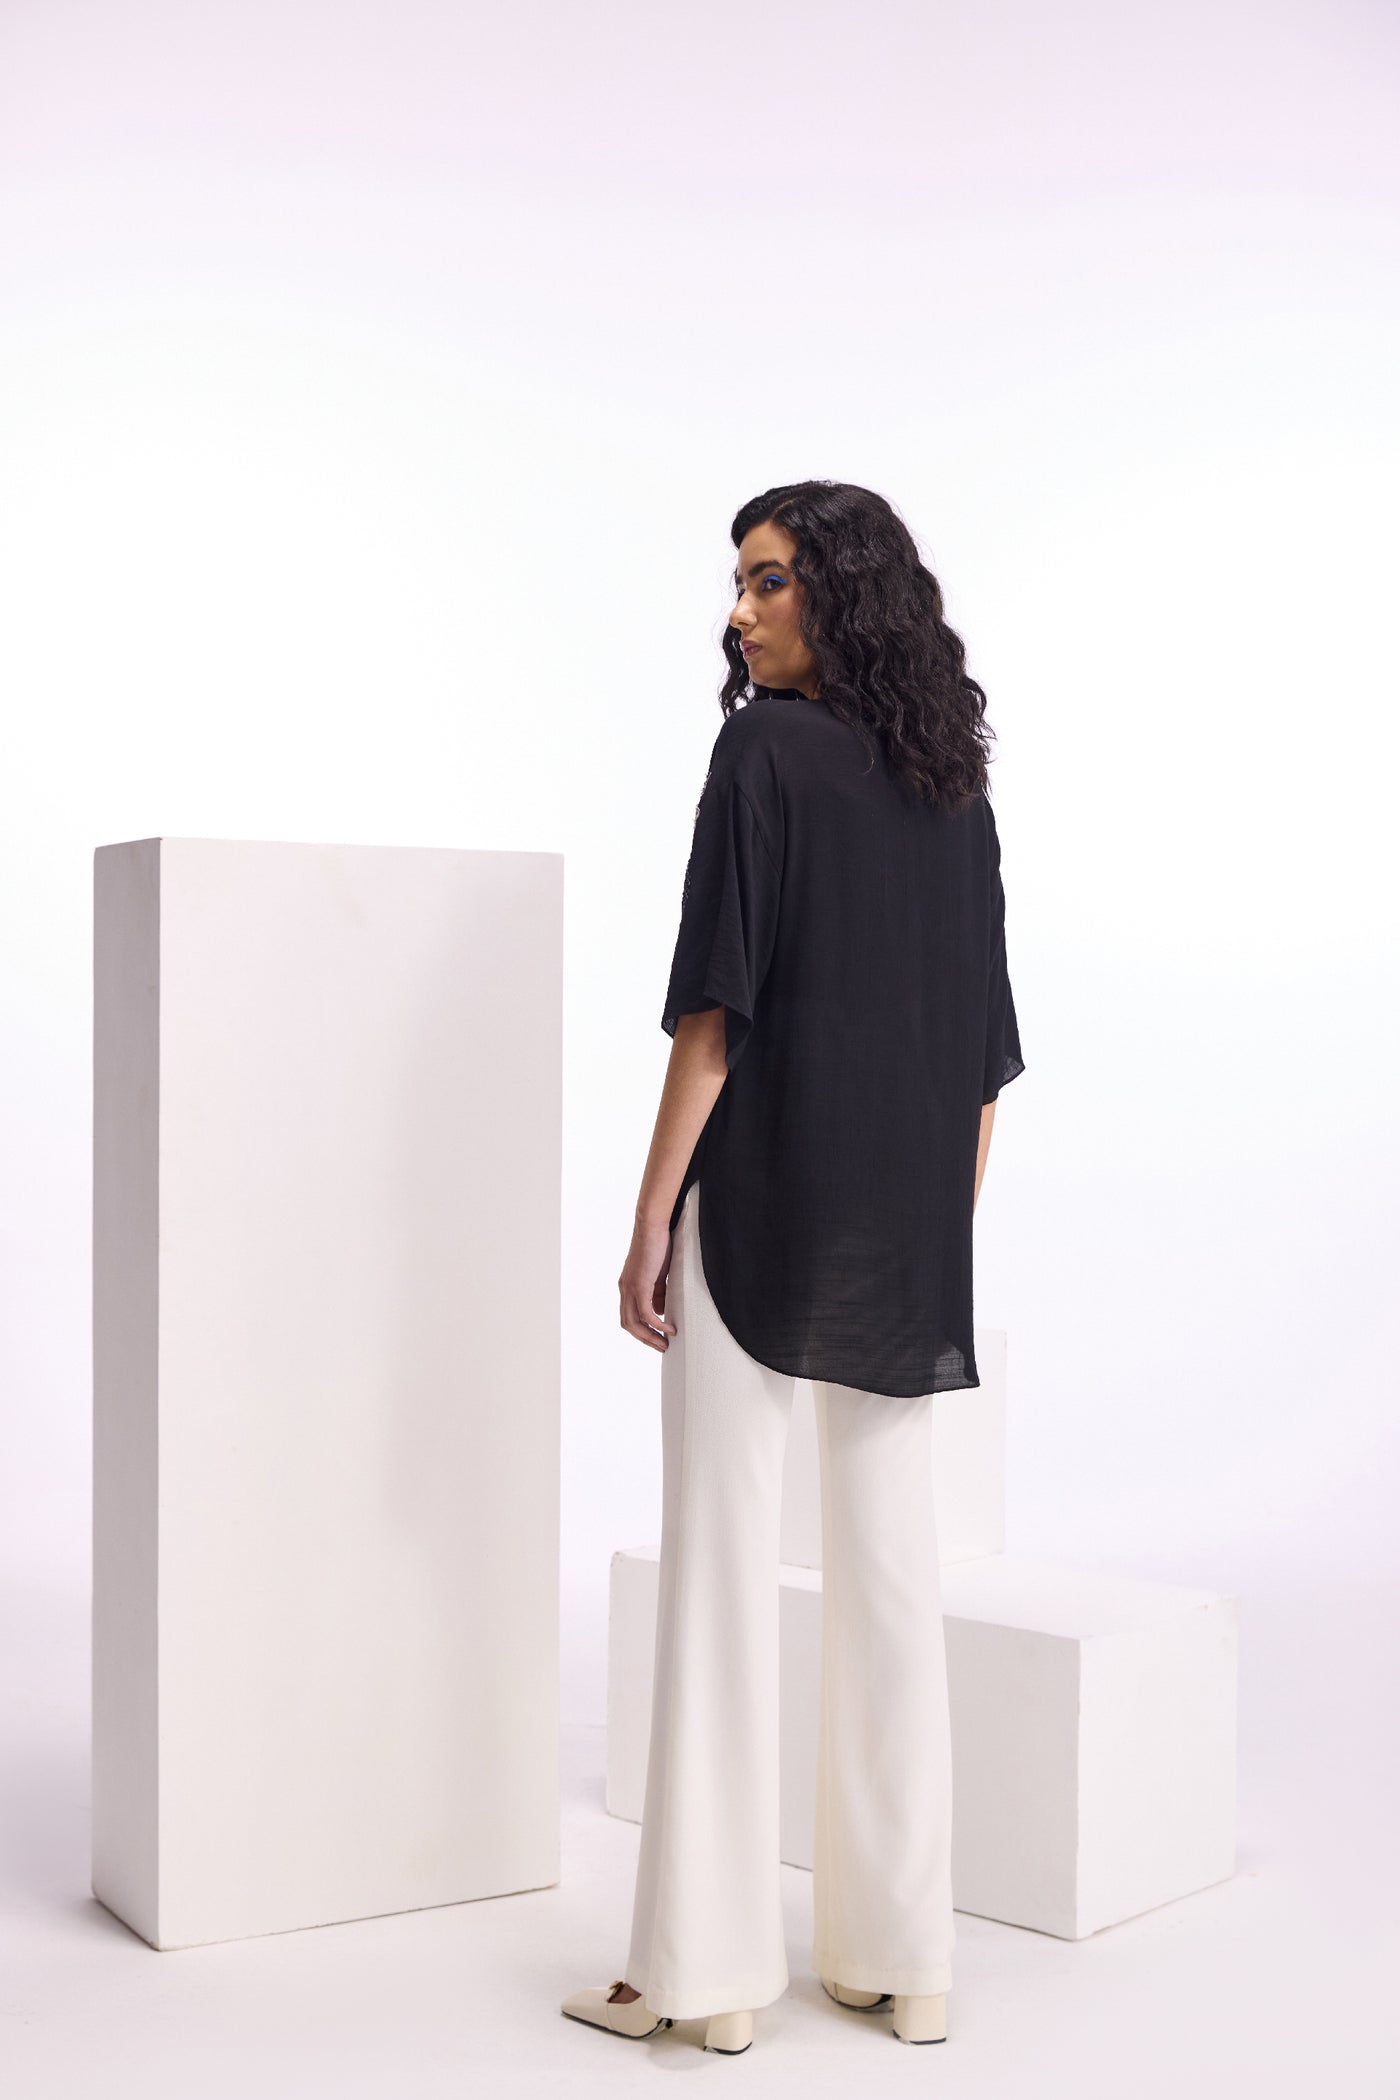 Namrata Joshipura Alder Wide Collar Shirt indian designer wear online shopping melange singapore